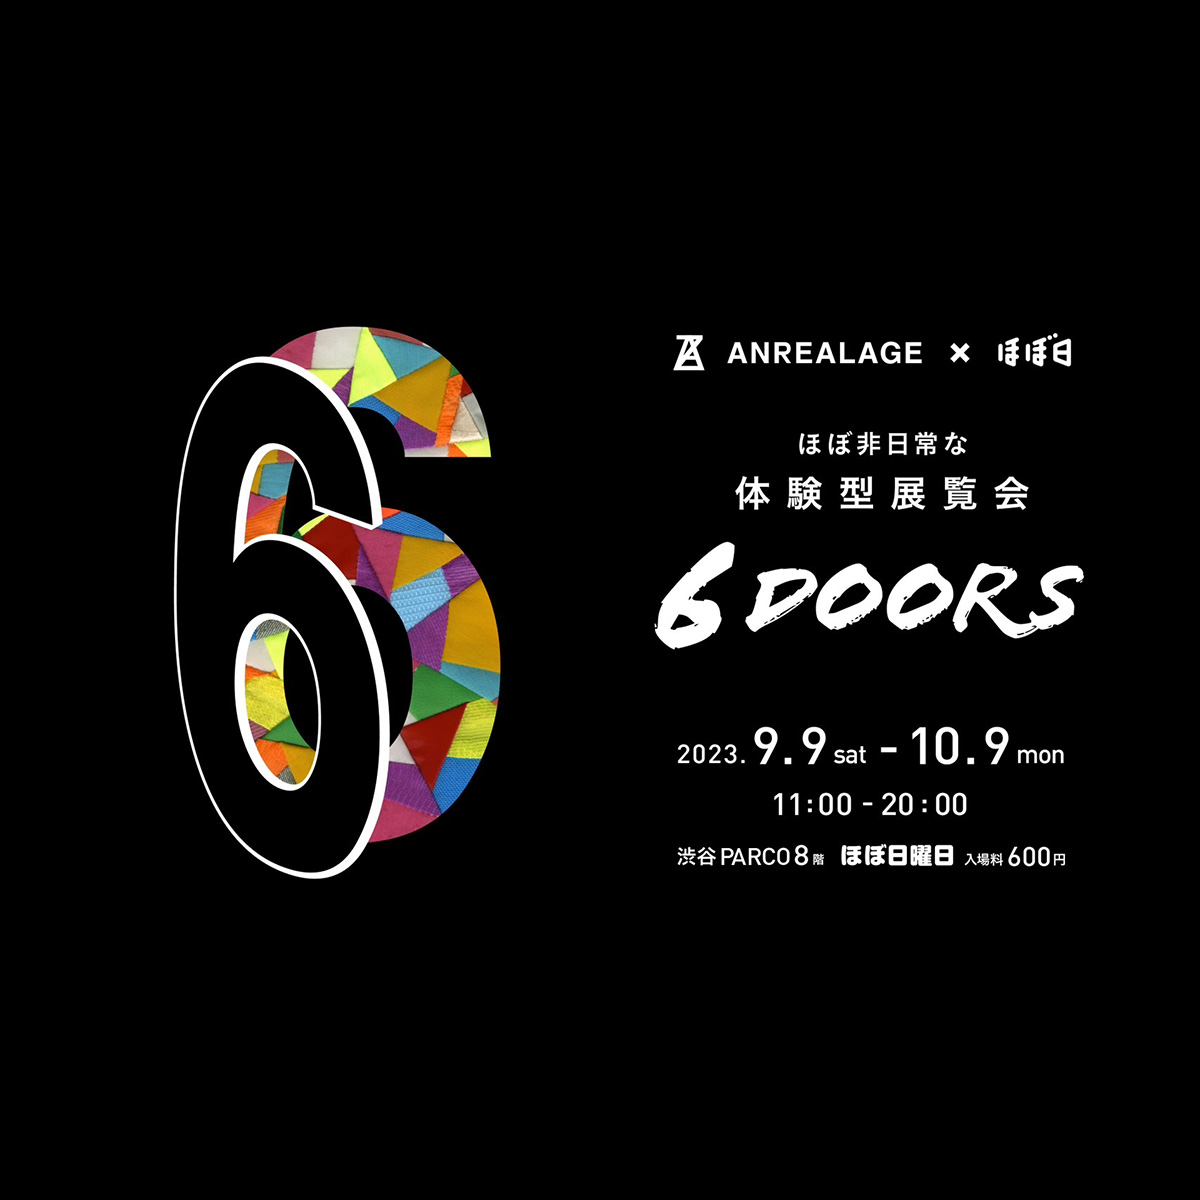 アンリアレイジ×ほぼ日曜日による体験型展覧会「6 DOORS」が開催！